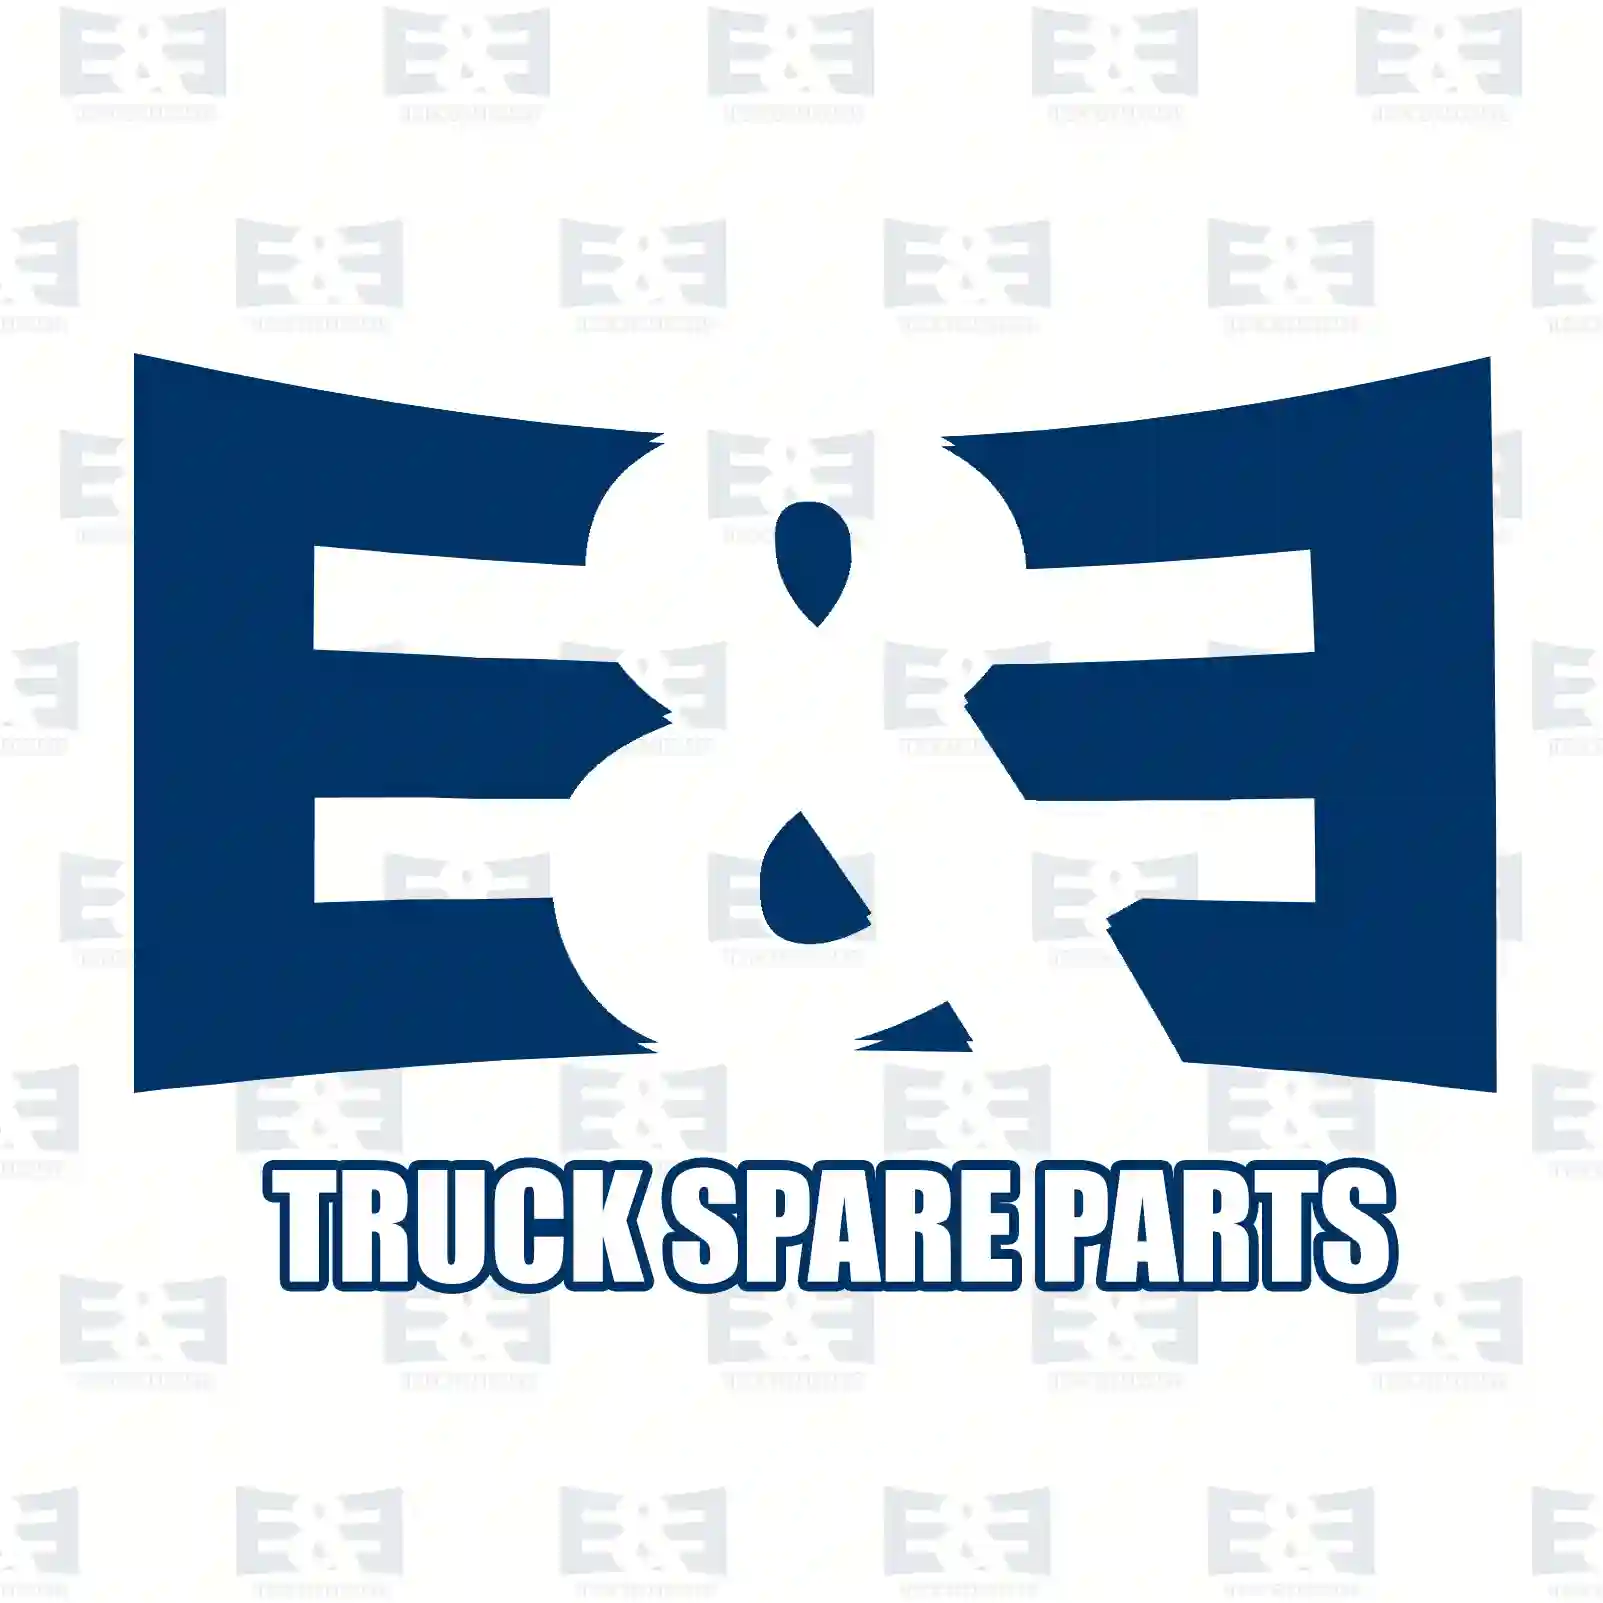 Shifting segment, 2E2278377, 3892680446, 94526 ||  2E2278377 E&E Truck Spare Parts | Truck Spare Parts, Auotomotive Spare Parts Shifting segment, 2E2278377, 3892680446, 94526 ||  2E2278377 E&E Truck Spare Parts | Truck Spare Parts, Auotomotive Spare Parts